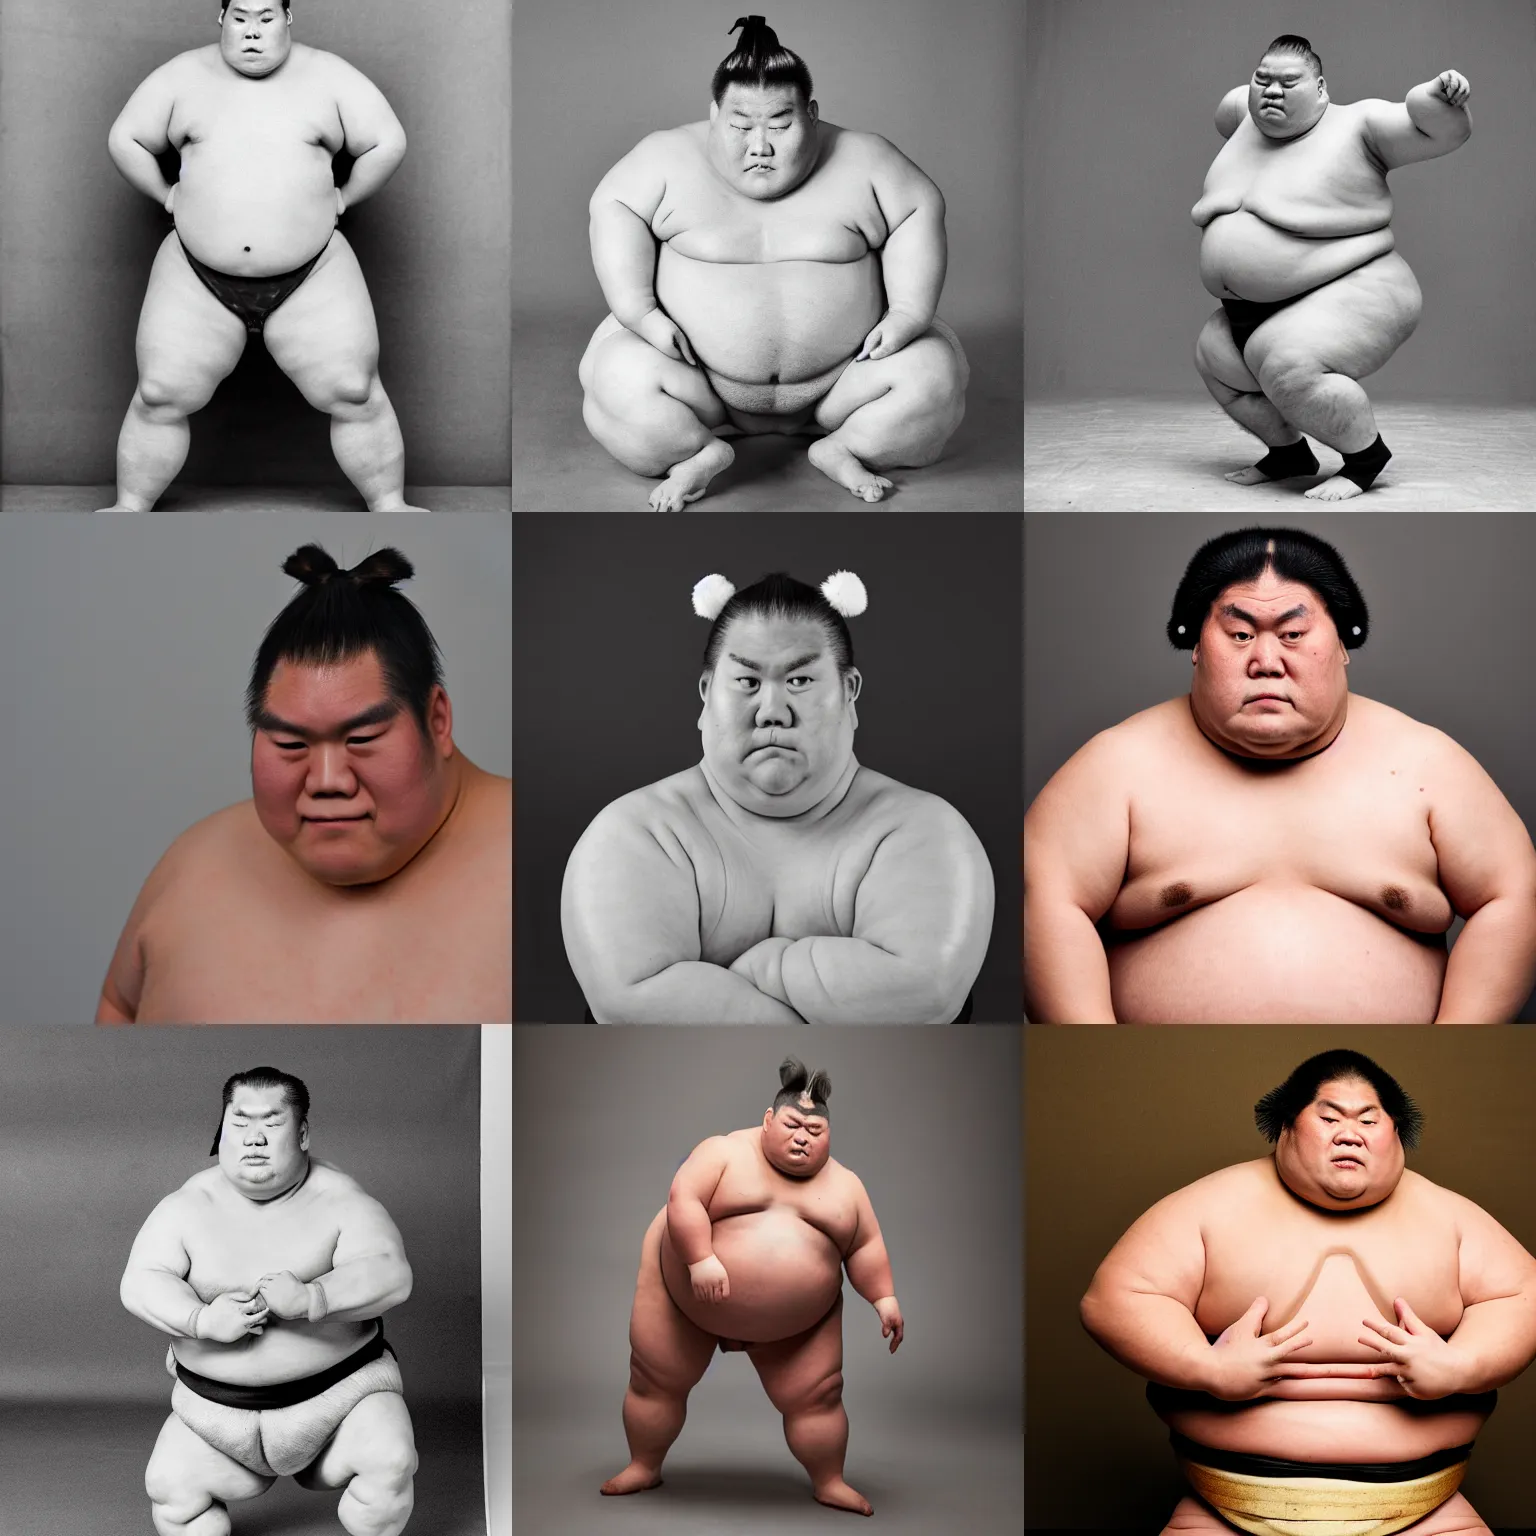 Prompt: sumo wrestler, studio photo